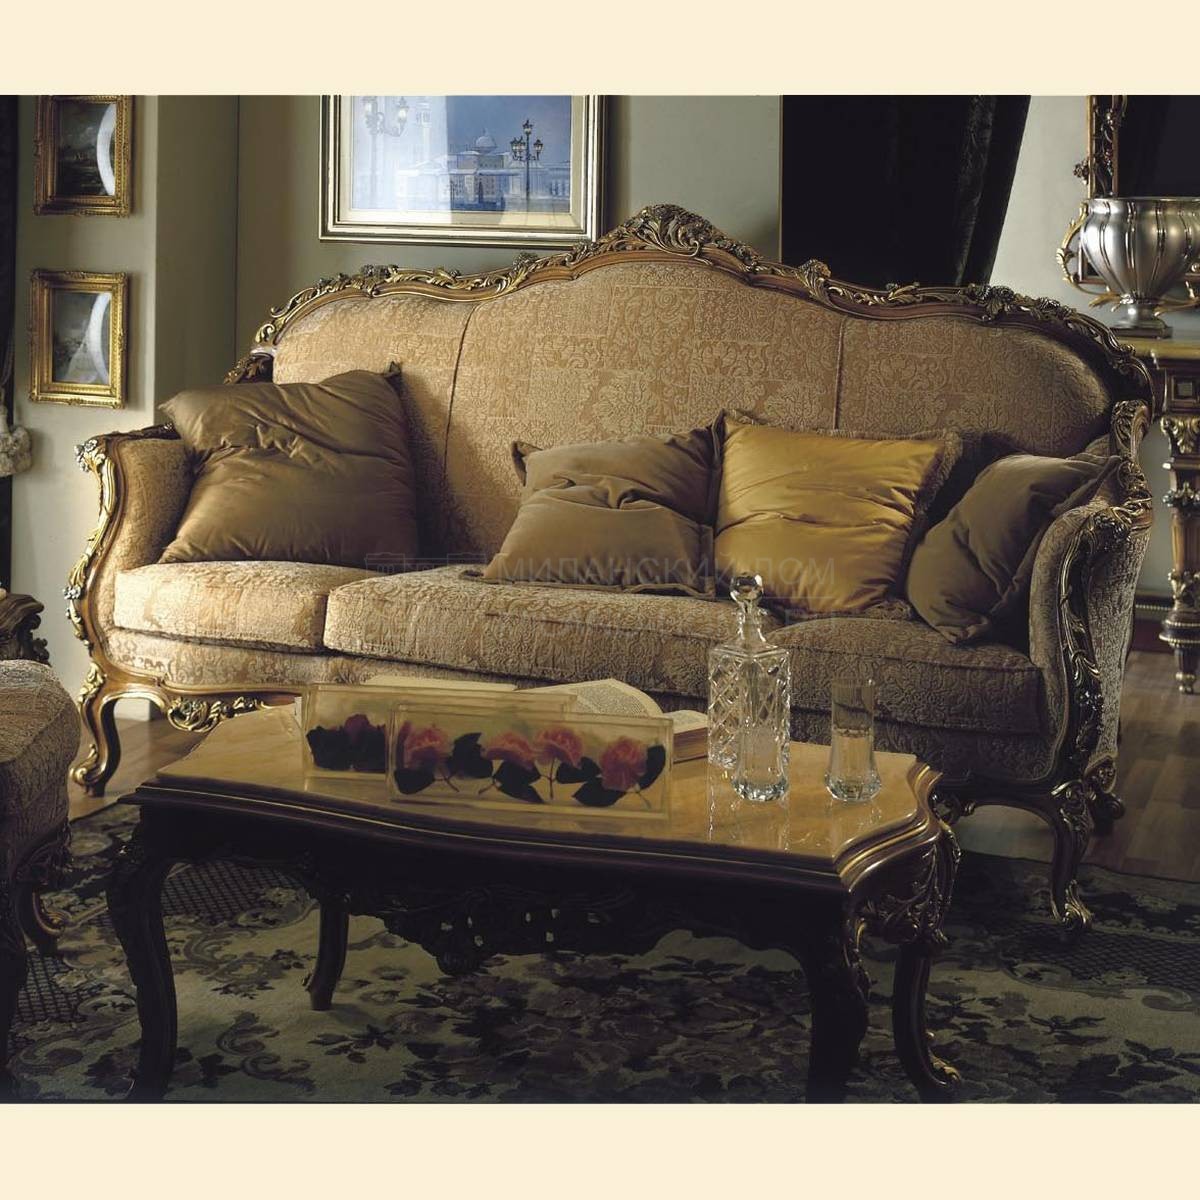 Прямой диван PC 4223 Ward/sofa из Италии фабрики ASNAGHI INTERIORS